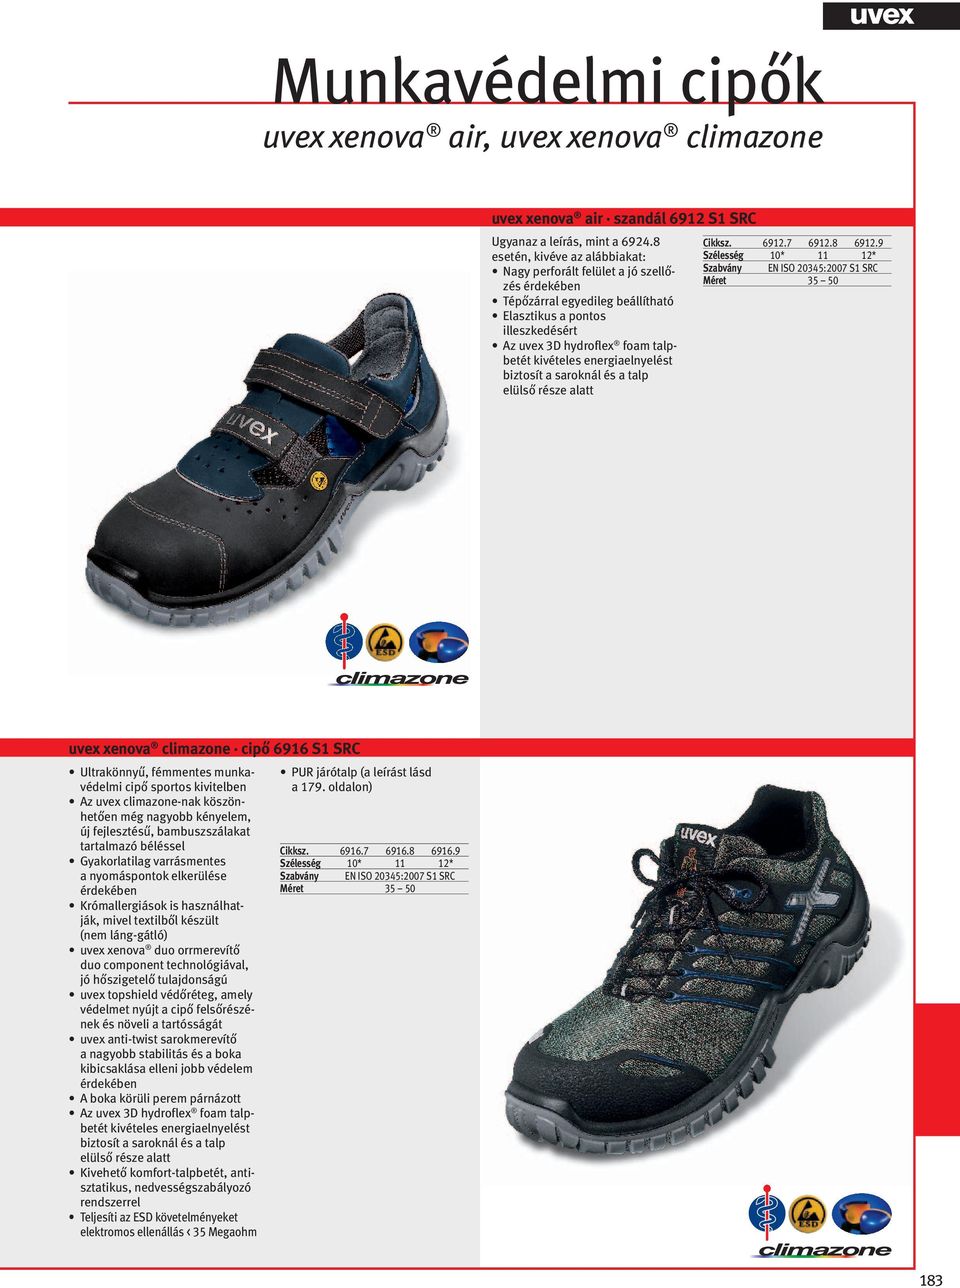 9 Szélesség 10* 11 12* EN ISO 20345:2007 S1 SRC uvex xenova climazone cipő 6916 S1 SRC Ultrakönnyű, fémmentes munkavédelmi cipő sportos kivitelben Az uvex climazone-nak köszönhetően még nagyobb